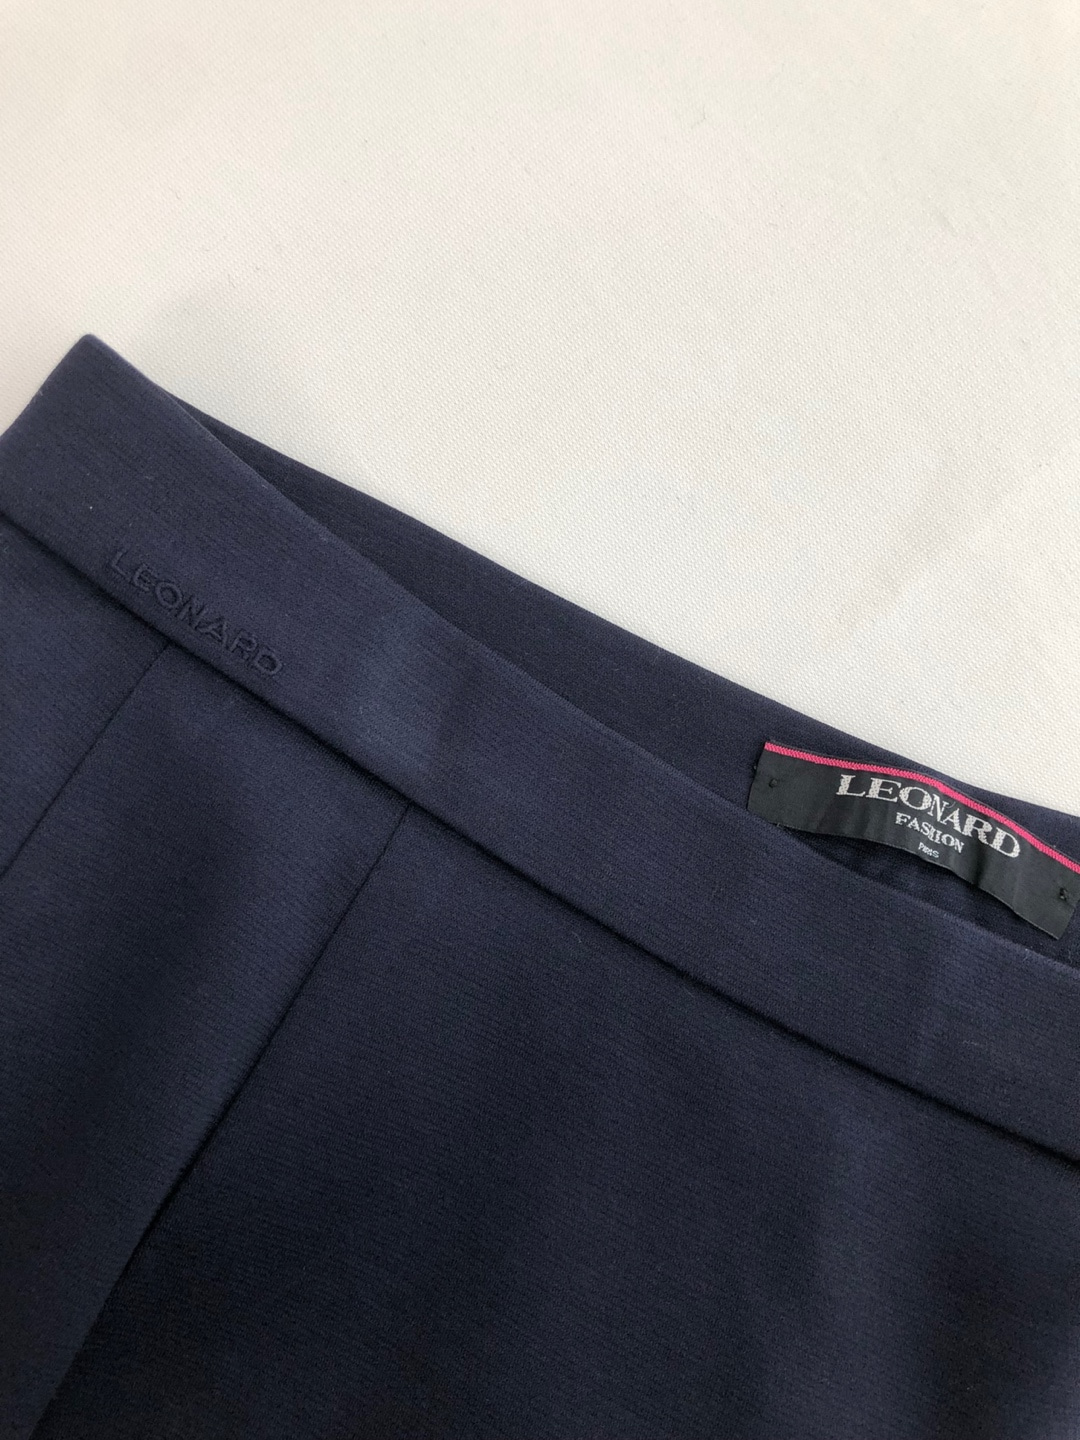 Leonard navy plain back slit skirt [28-30 inch]